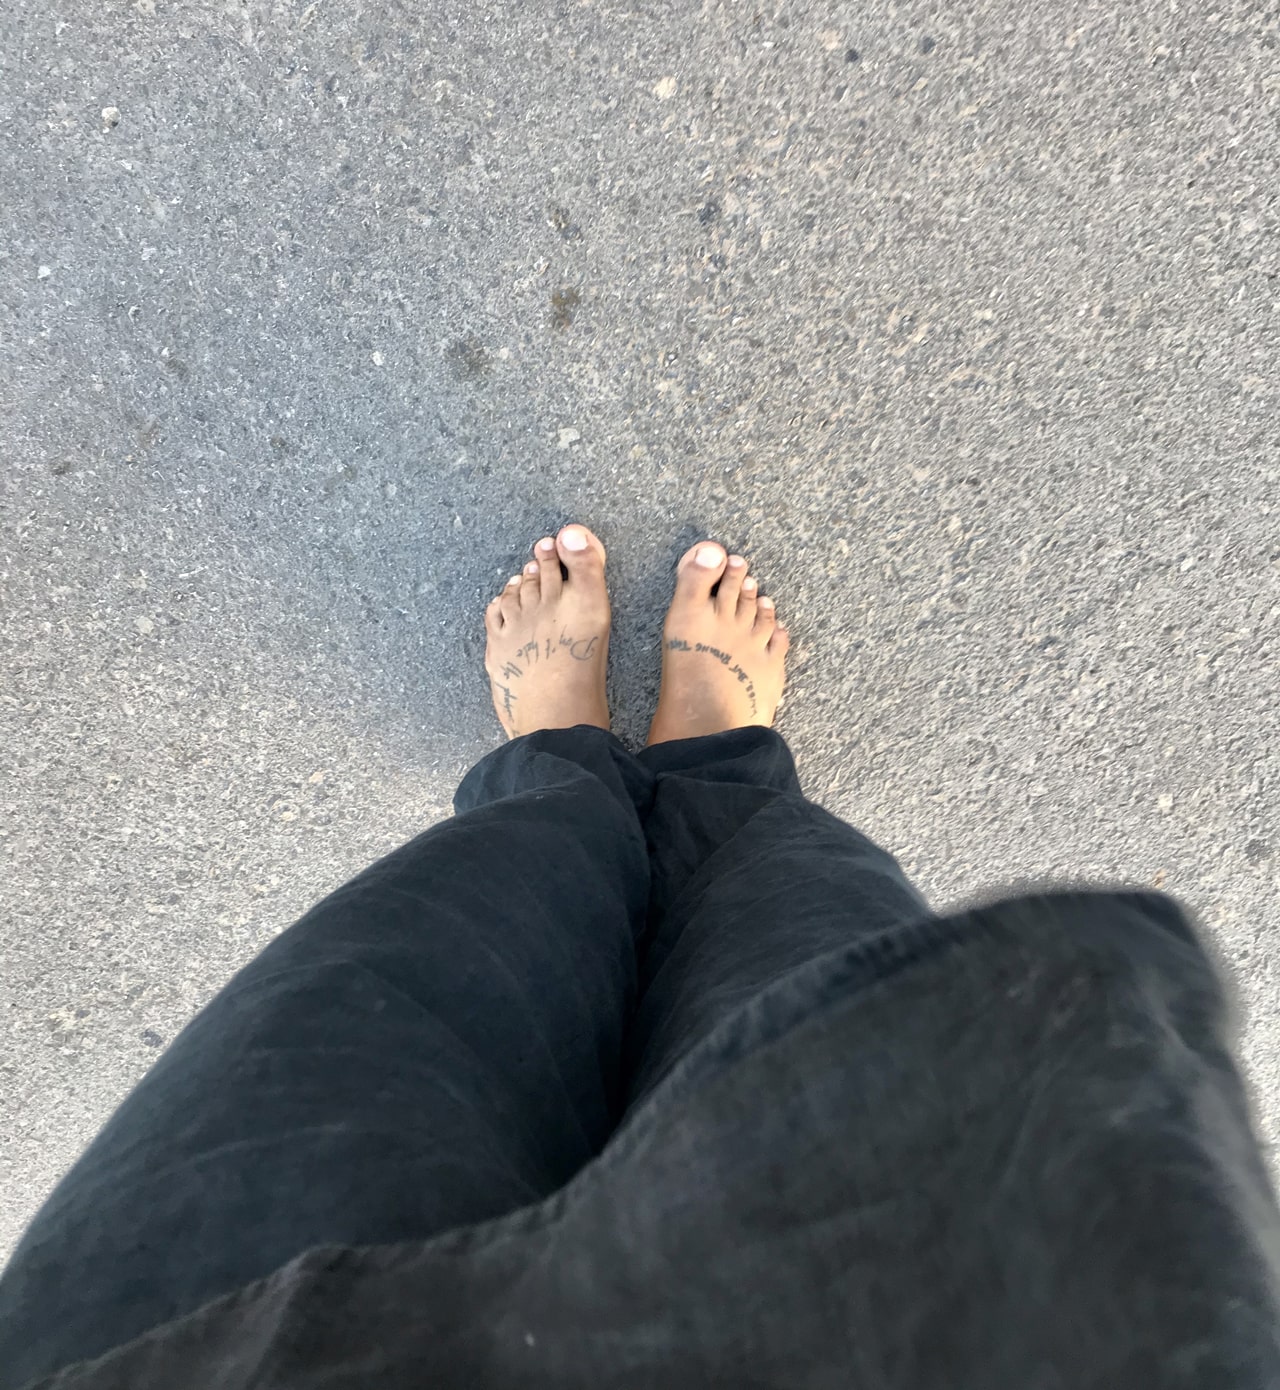 Zapatillas de casa mujer Barefoot - Caminando Descalzos